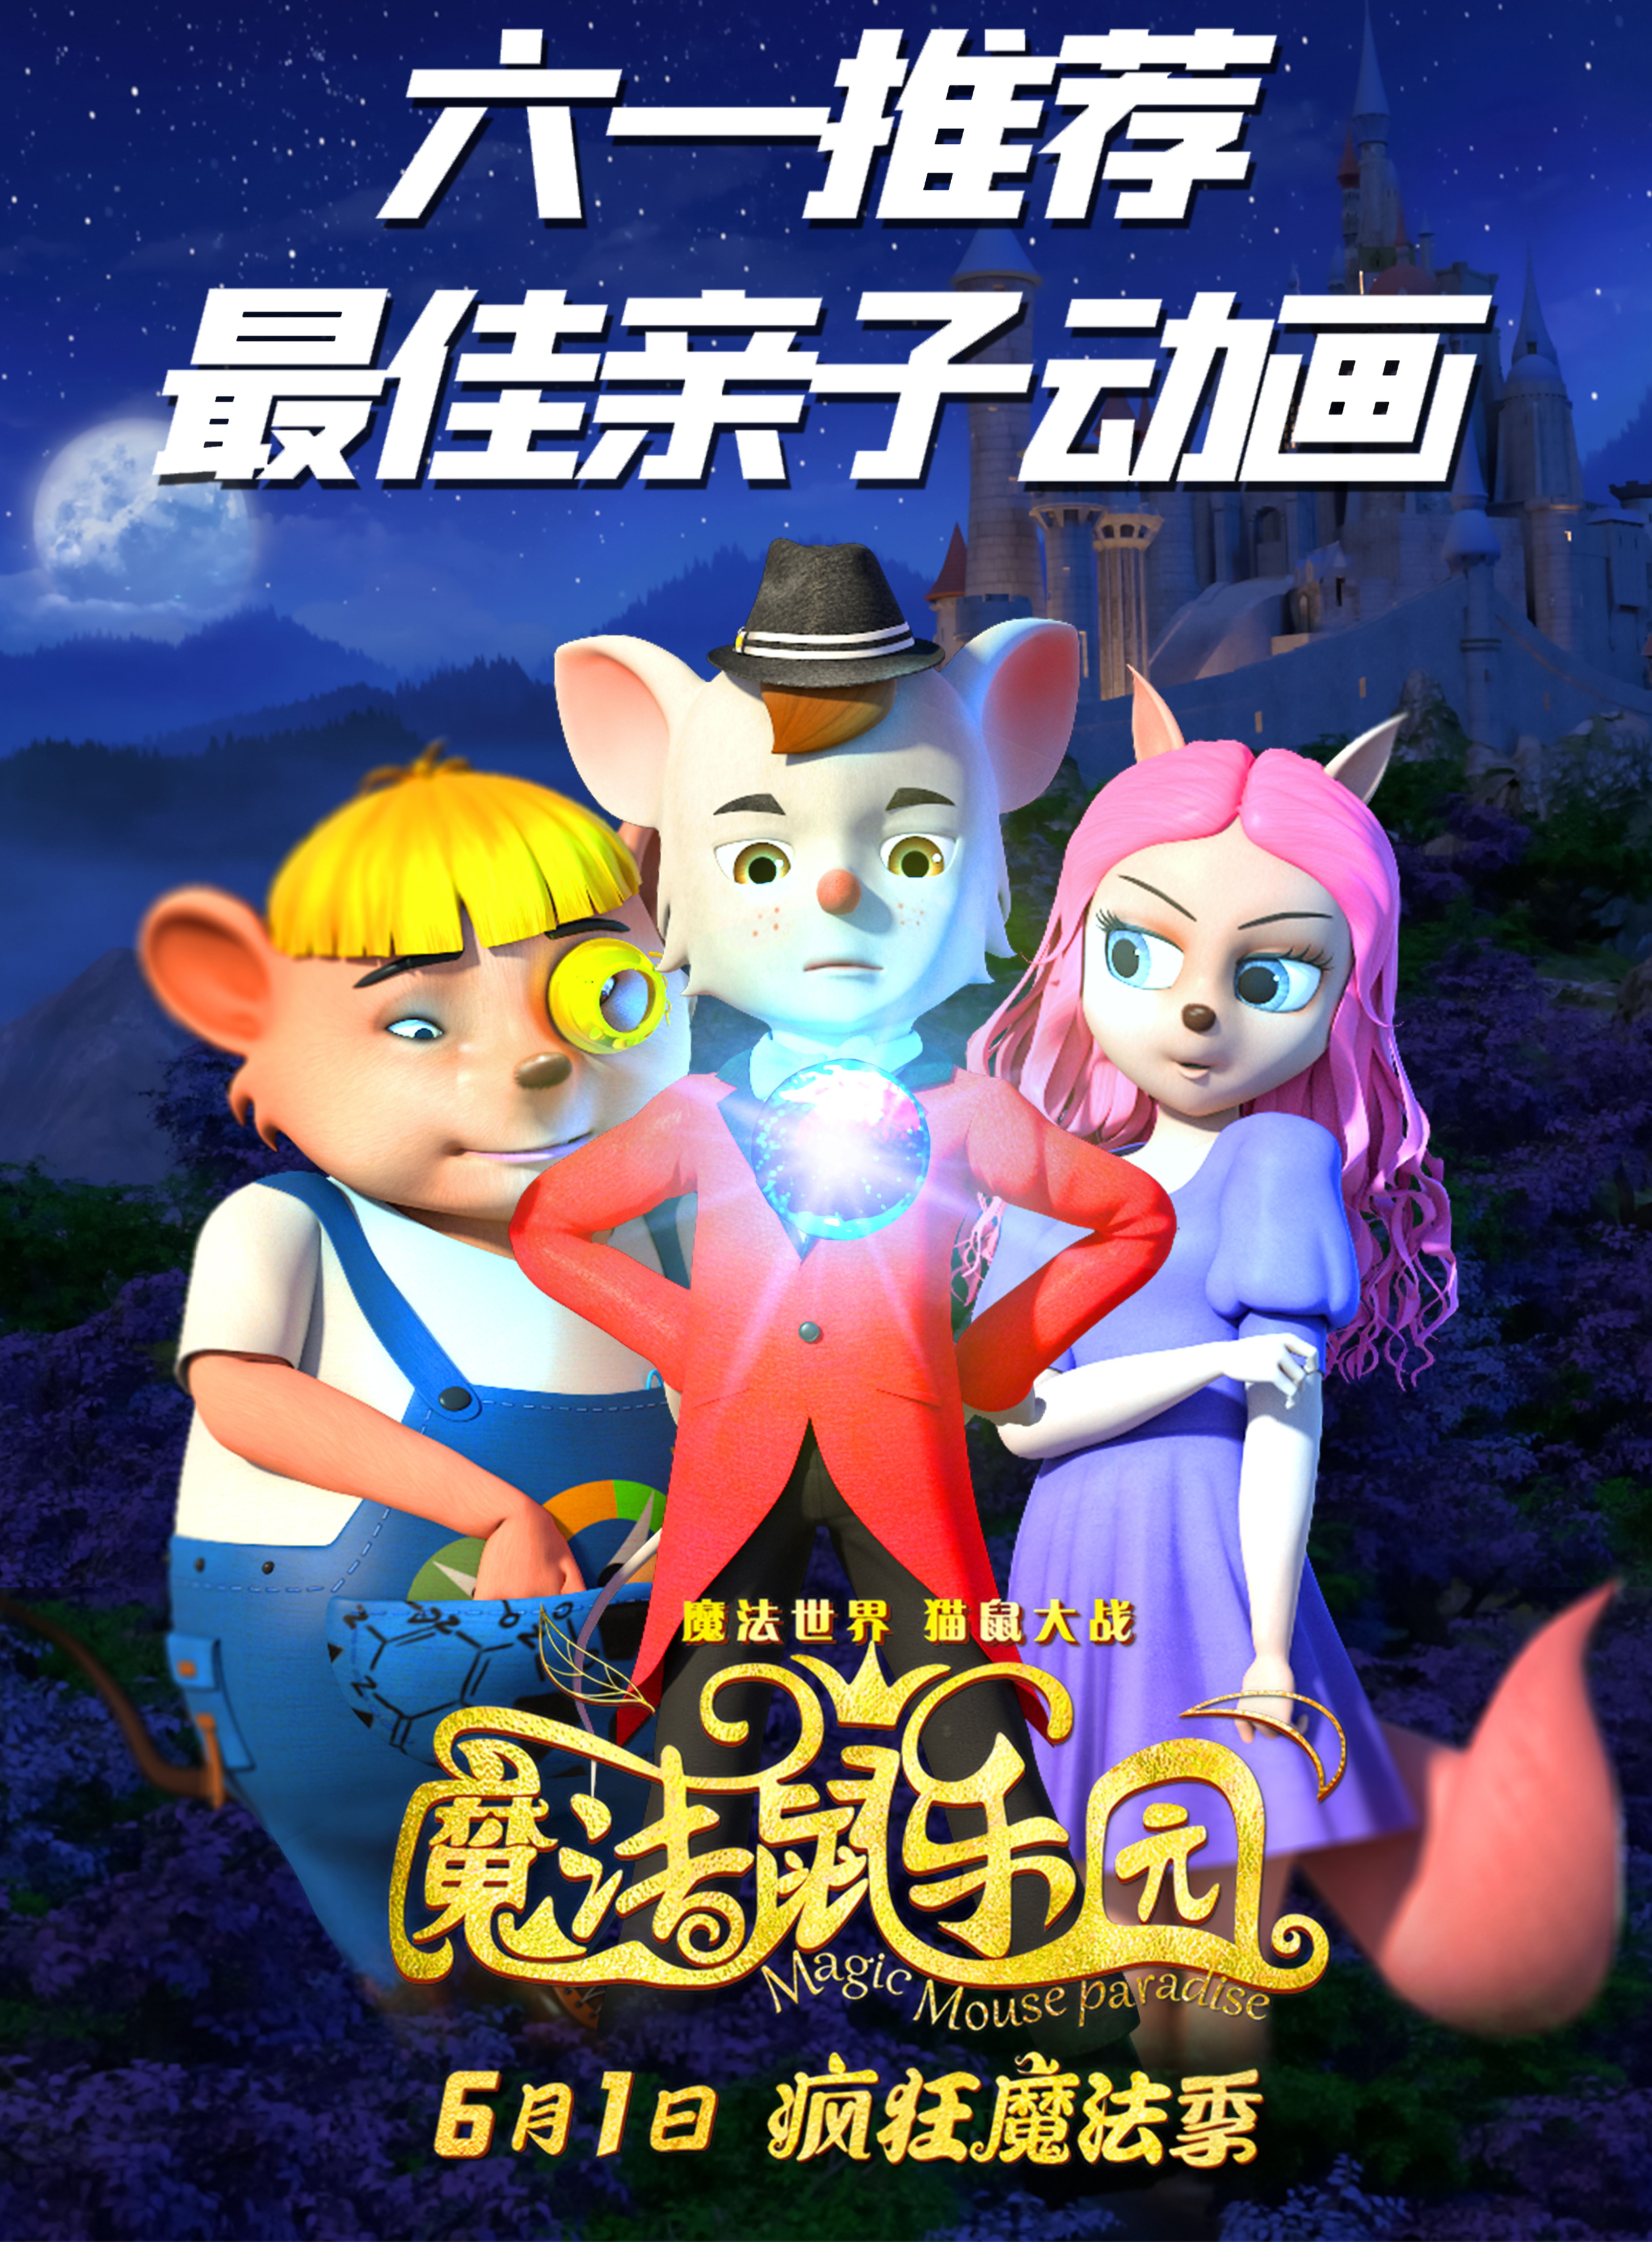 奇妙旅程，即将开启！合家欢动画电影《魔法鼠乐园》6月1日全国上映！